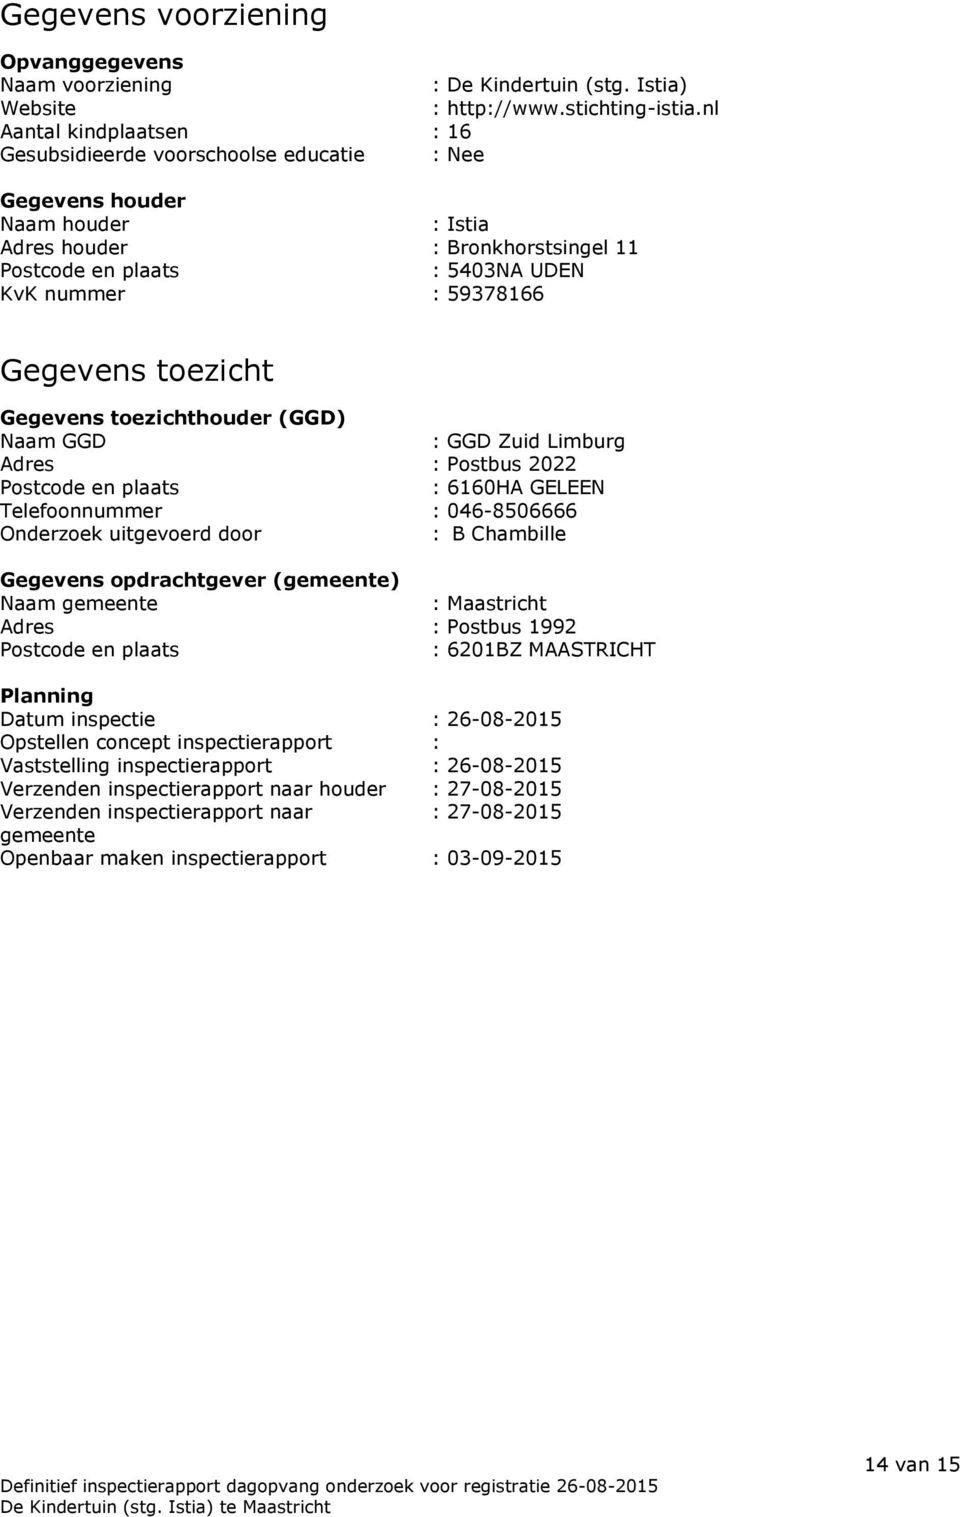 Gegevens toezicht Gegevens toezichthouder (GGD) Naam GGD : GGD Zuid Limburg Adres : Postbus 2022 Postcode en plaats : 6160HA GELEEN Telefoonnummer : 046-8506666 Onderzoek uitgevoerd door : B